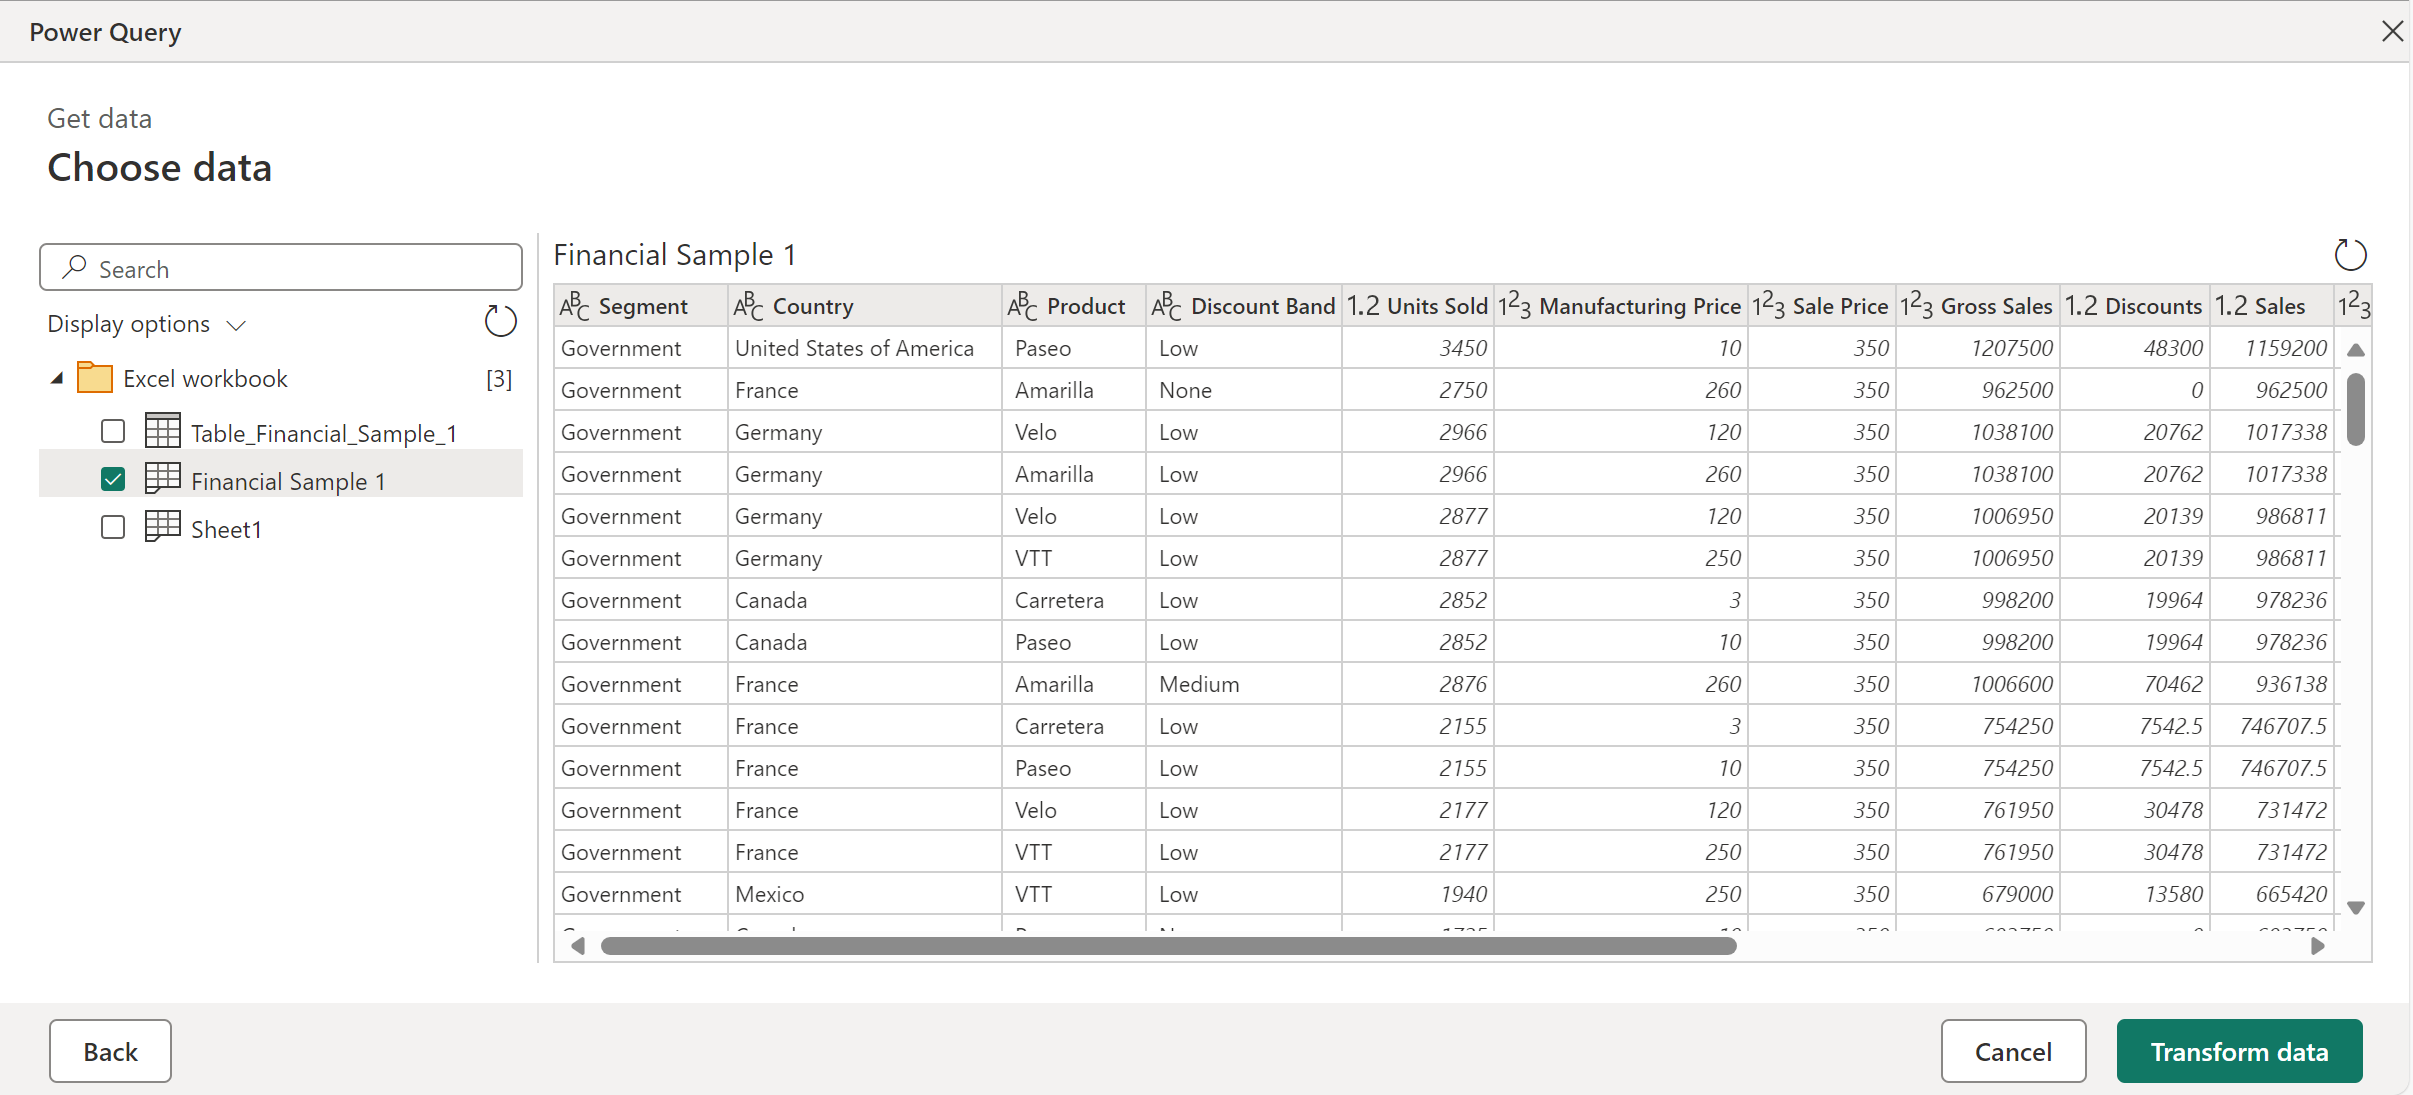 Στιγμιότυπο οθόνης του βιβλίου εργασίας του Excel που έχει εισαχθεί στην ηλεκτρονική περιήγηση του Power Query.